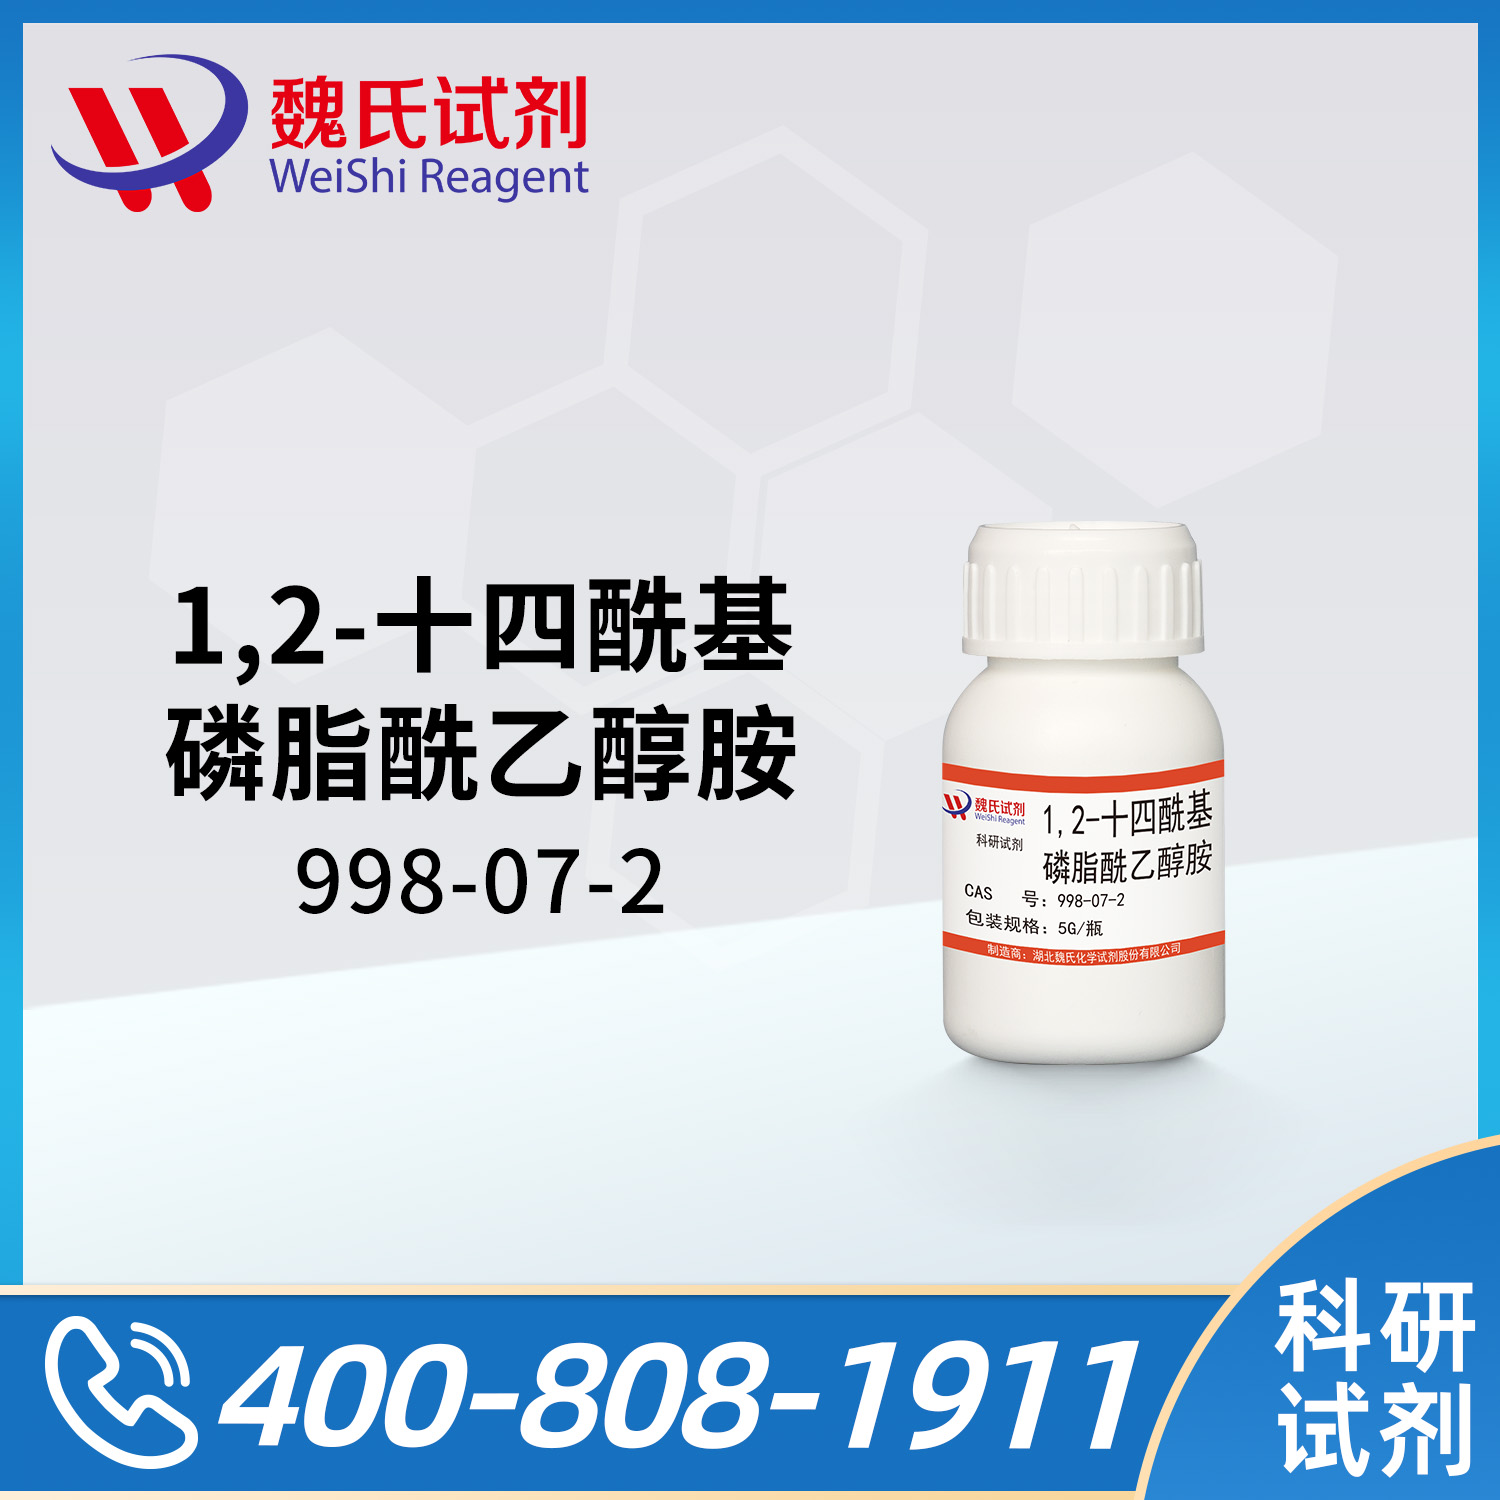 1,2-十四酰基磷脂酰乙醇胺；DMPE